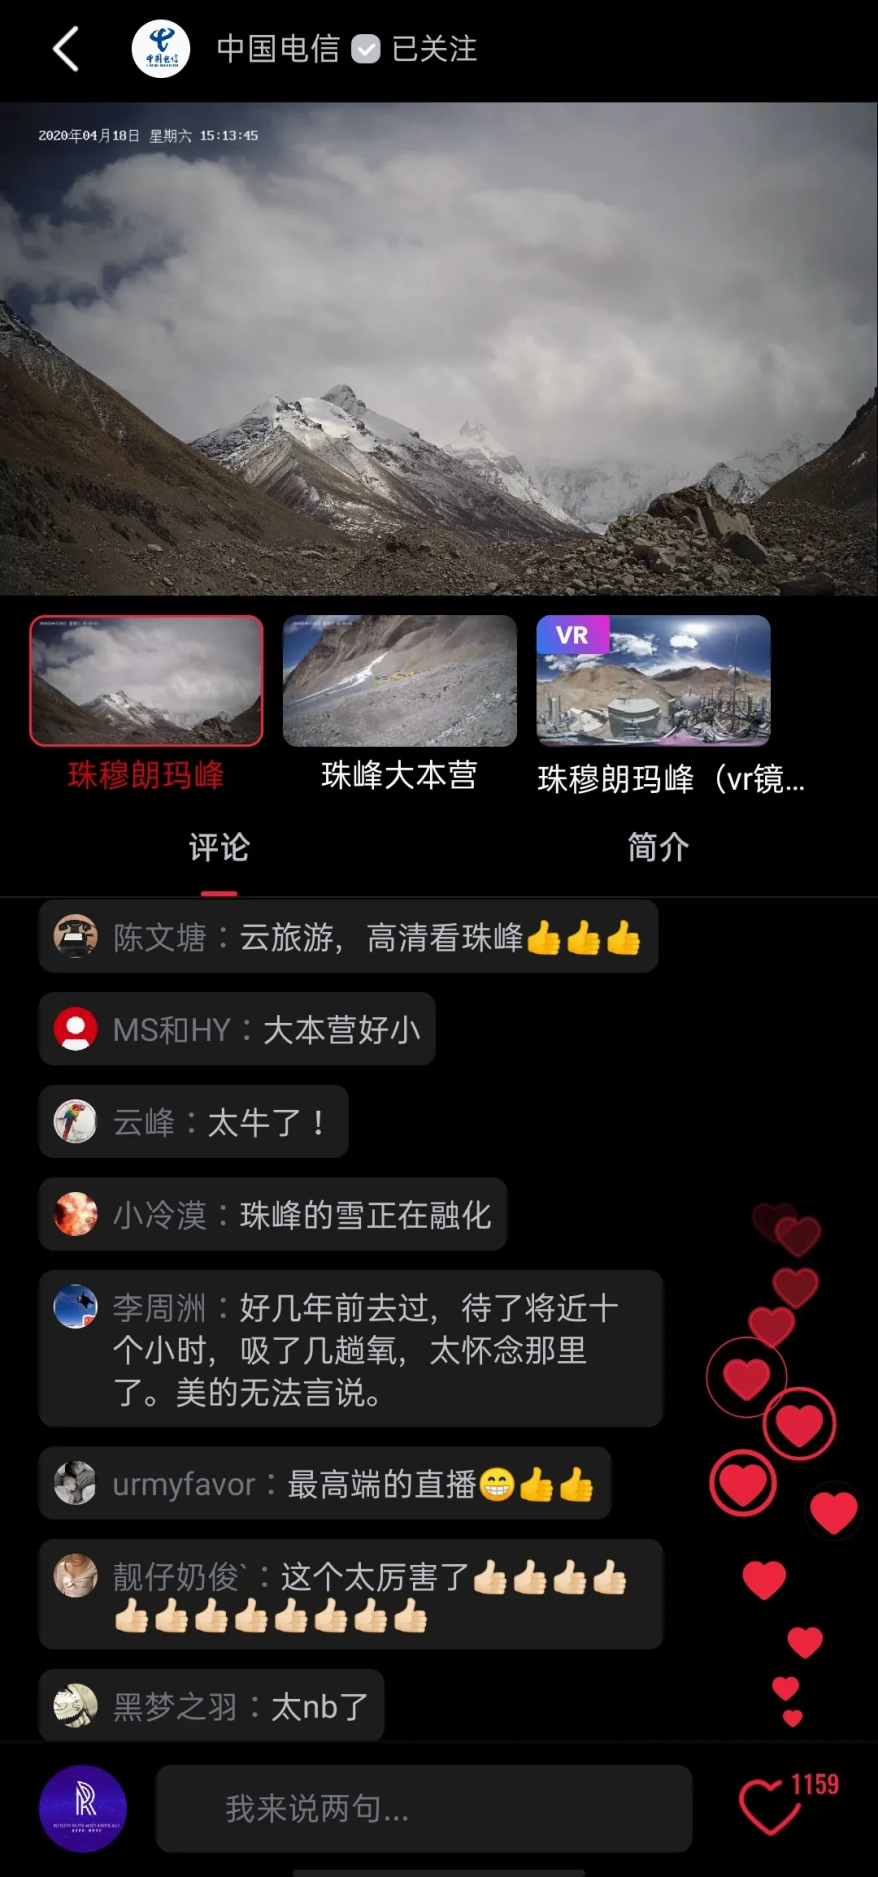 从“云监工”到“云登顶” 中国电信联合央视频实现珠穆朗玛峰5G云直播